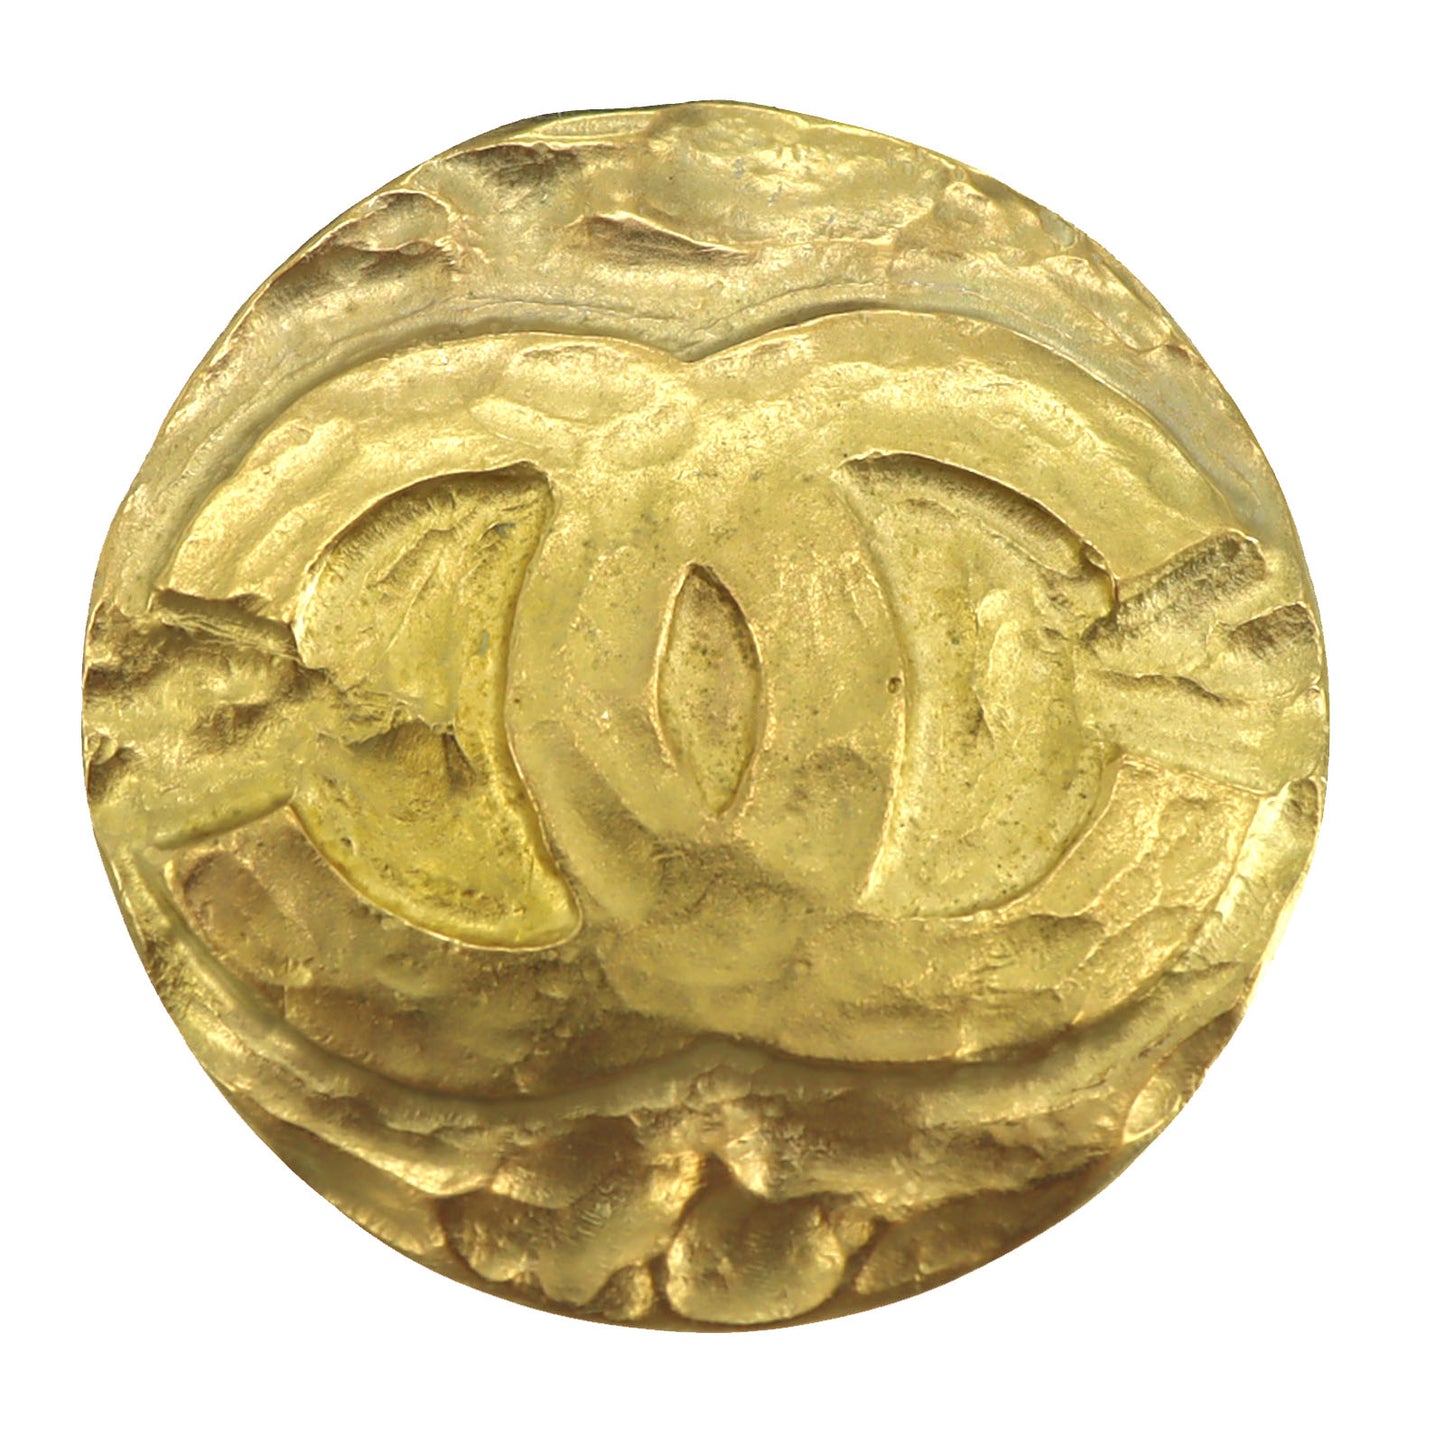 CHANEL CC Logos Circle Pin Brooch Gold Plated 95P #CD658